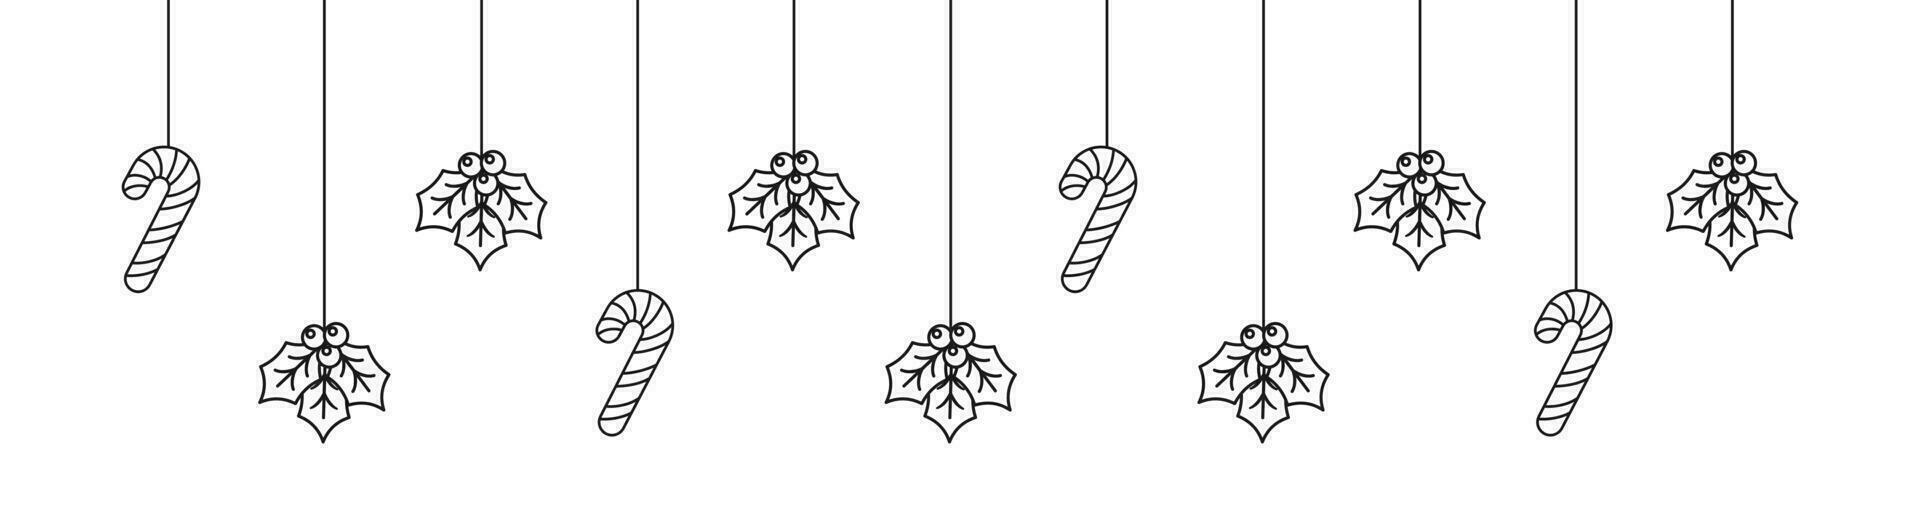 vrolijk Kerstmis grens banier schets tekening, hangende maretak en snoep riet guirlande. winter vakantie seizoen hoofd decoratie. web banier sjabloon. vector illustratie.